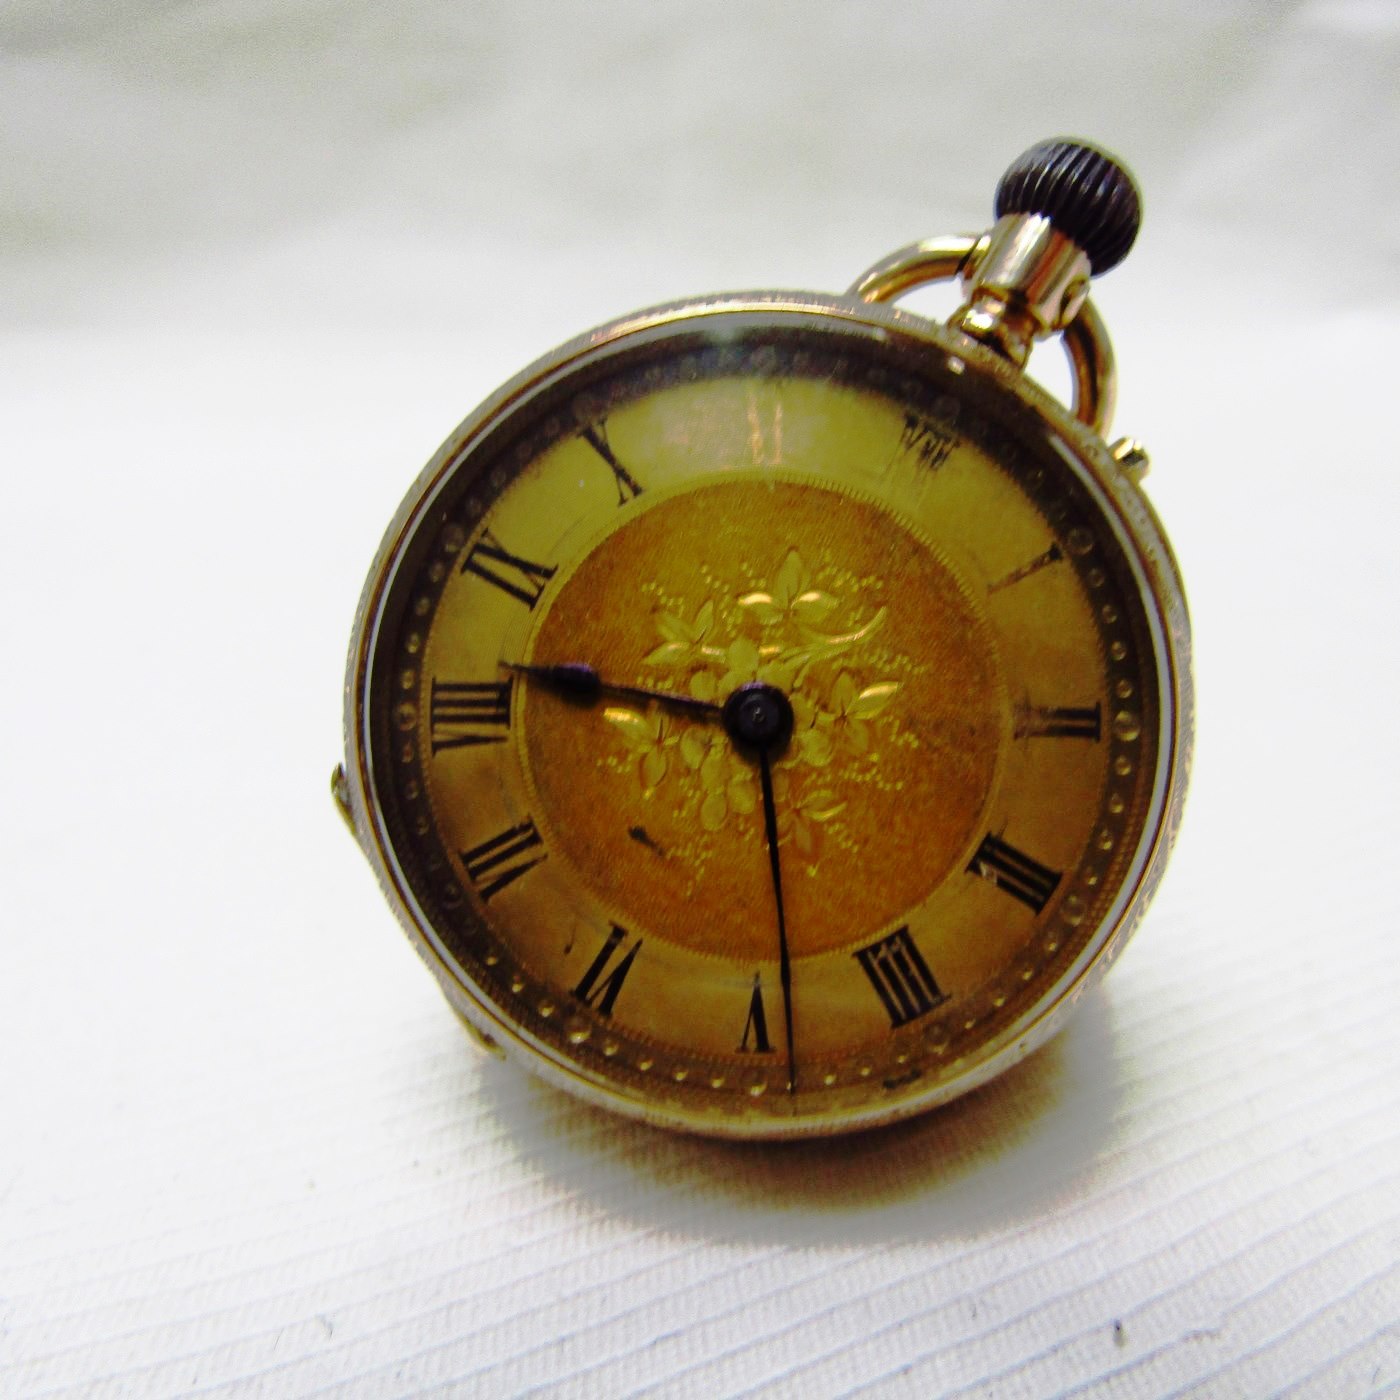 Reloj Suizo de Colgar, lepine y remontoir. Ca. 1900